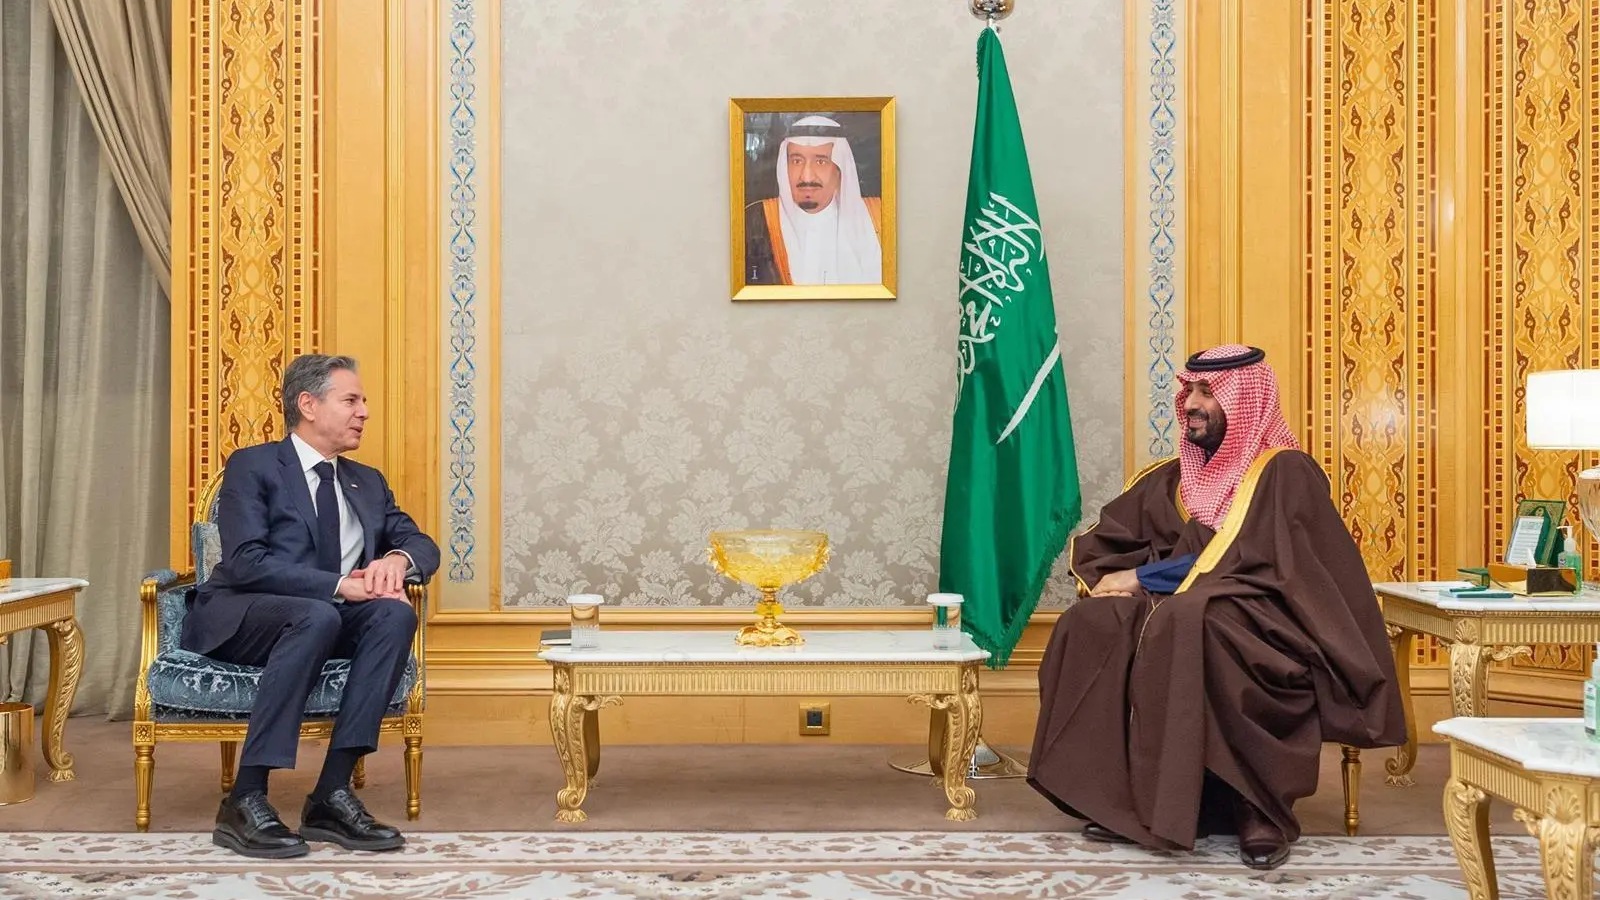 الأمير محمد بن سلمان أثناء لقائه أنتوني بلينكن اليوم في الرياض